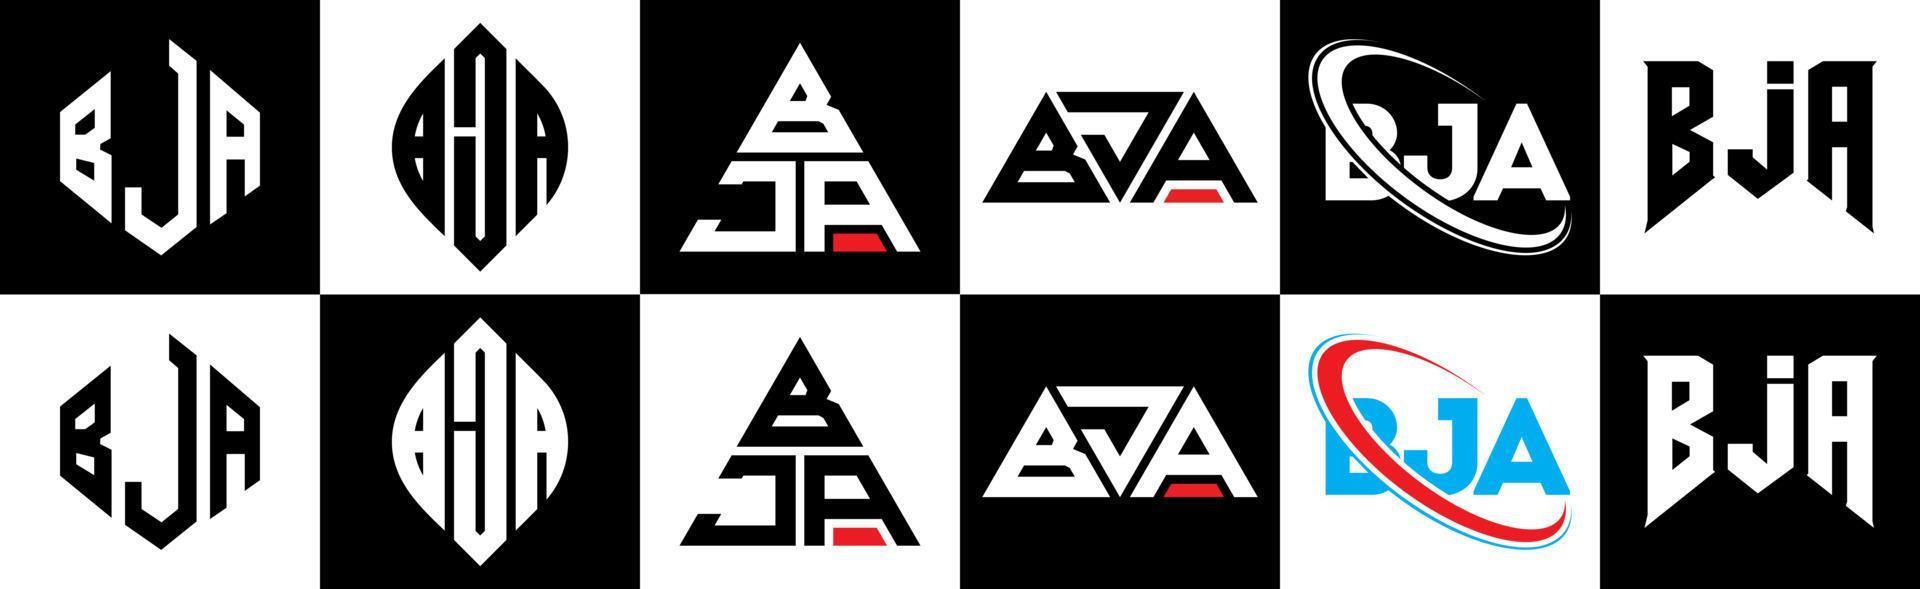 création de logo de lettre bja en six styles. polygone bja, cercle, triangle, hexagone, style plat et simple avec logo de lettre de variation de couleur noir et blanc dans un plan de travail. bja logo minimaliste et classique vecteur